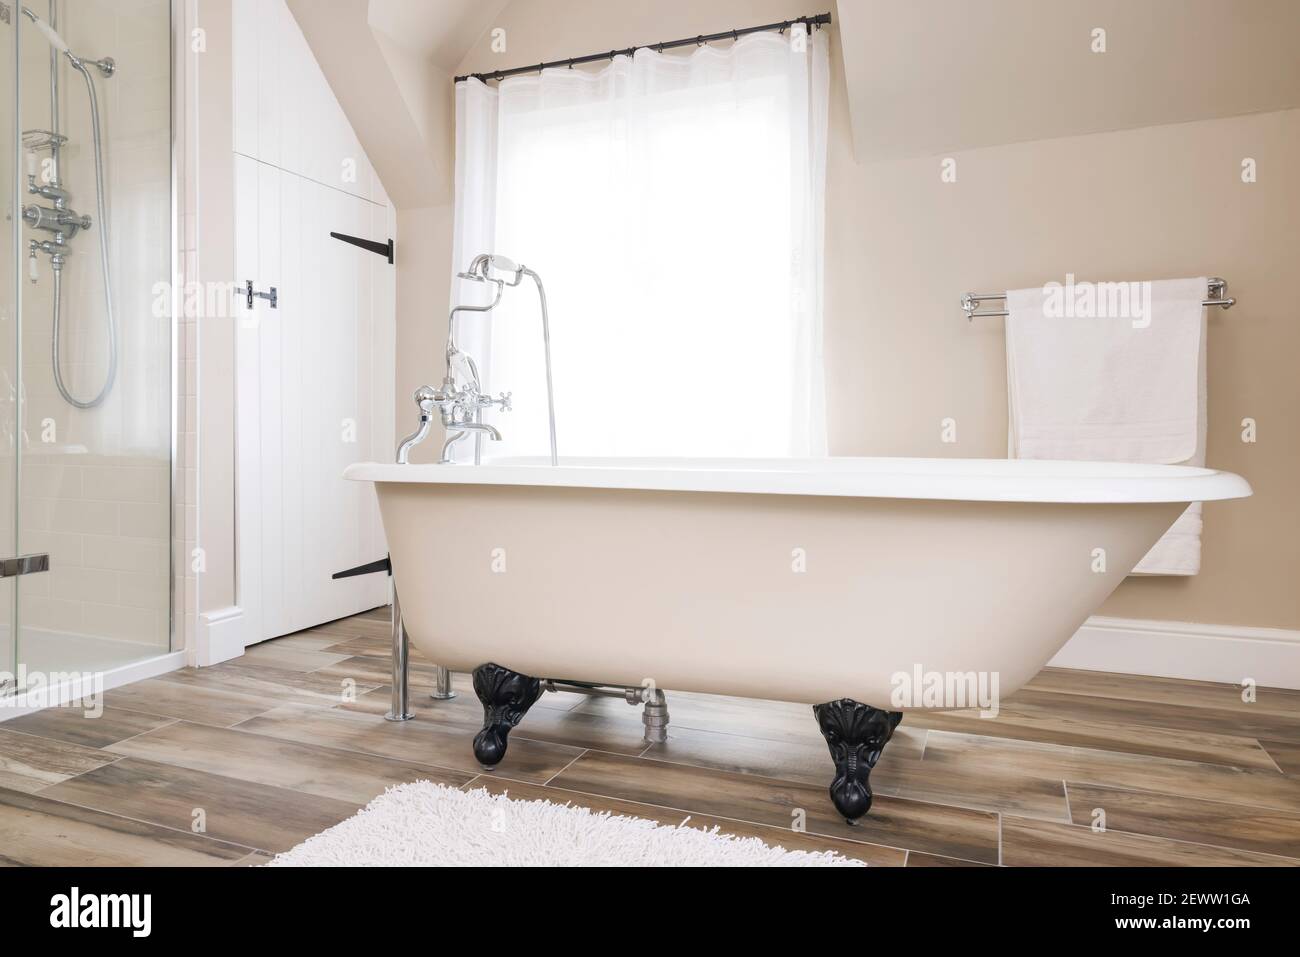 Badewanne, Clawfoot oder Clawfoot Badewanne in einem modernen Luxus-Badezimmer Interieur, Großbritannien. Badezeit. Stockfoto